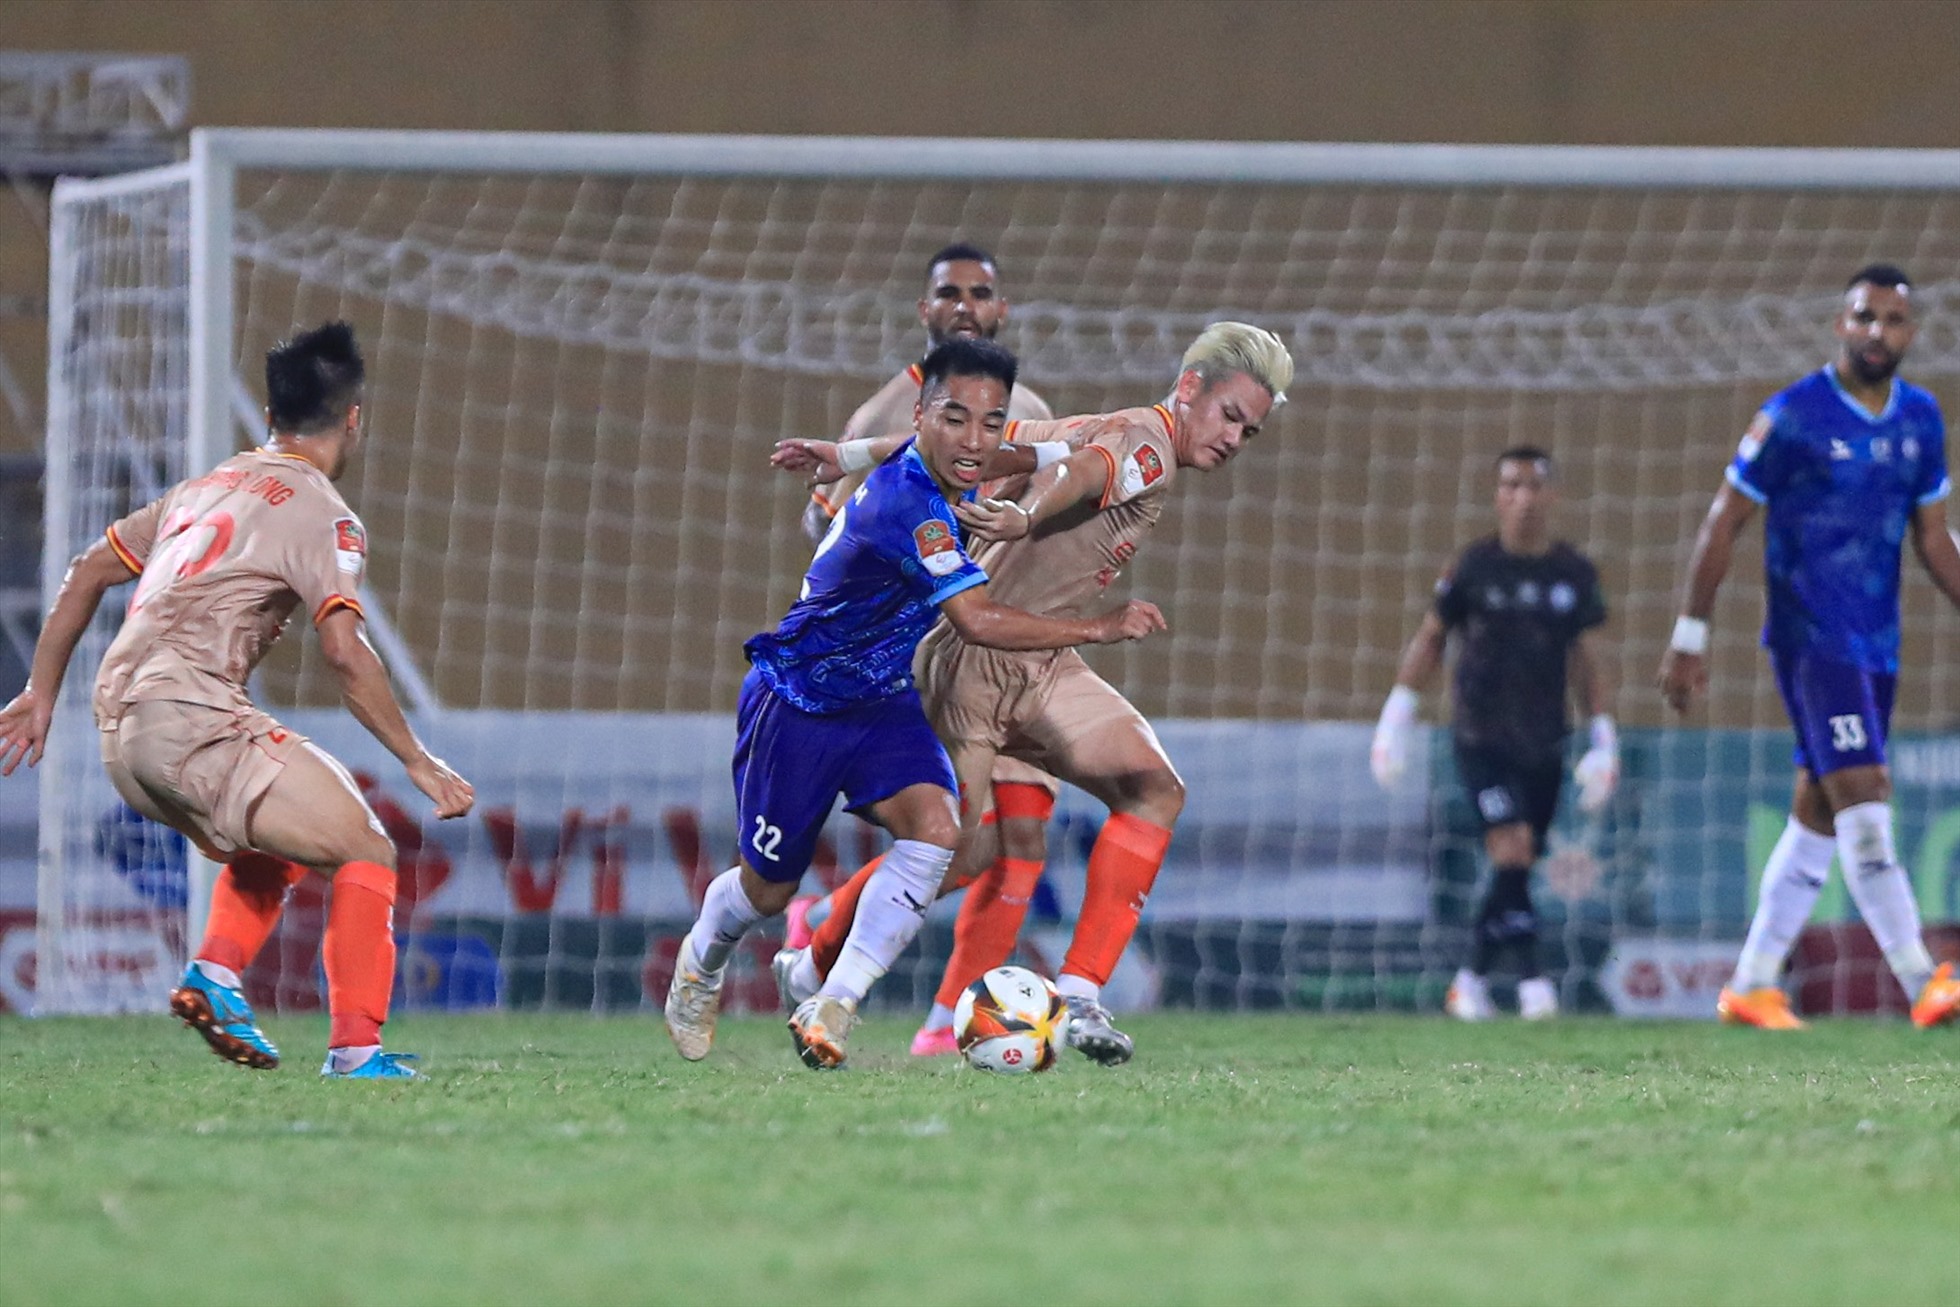 Hoà 0-0, Công an Hà Nội thu hẹp khoảng cách với đội đầu bảng Thanh Hoá xuống còn 3 điểm nhưng thi đấy nhiều hơn 1 Trần. Trong khi đó, Khánh Hoà xếp vị trí thứ 8 với 11 điểm có được.